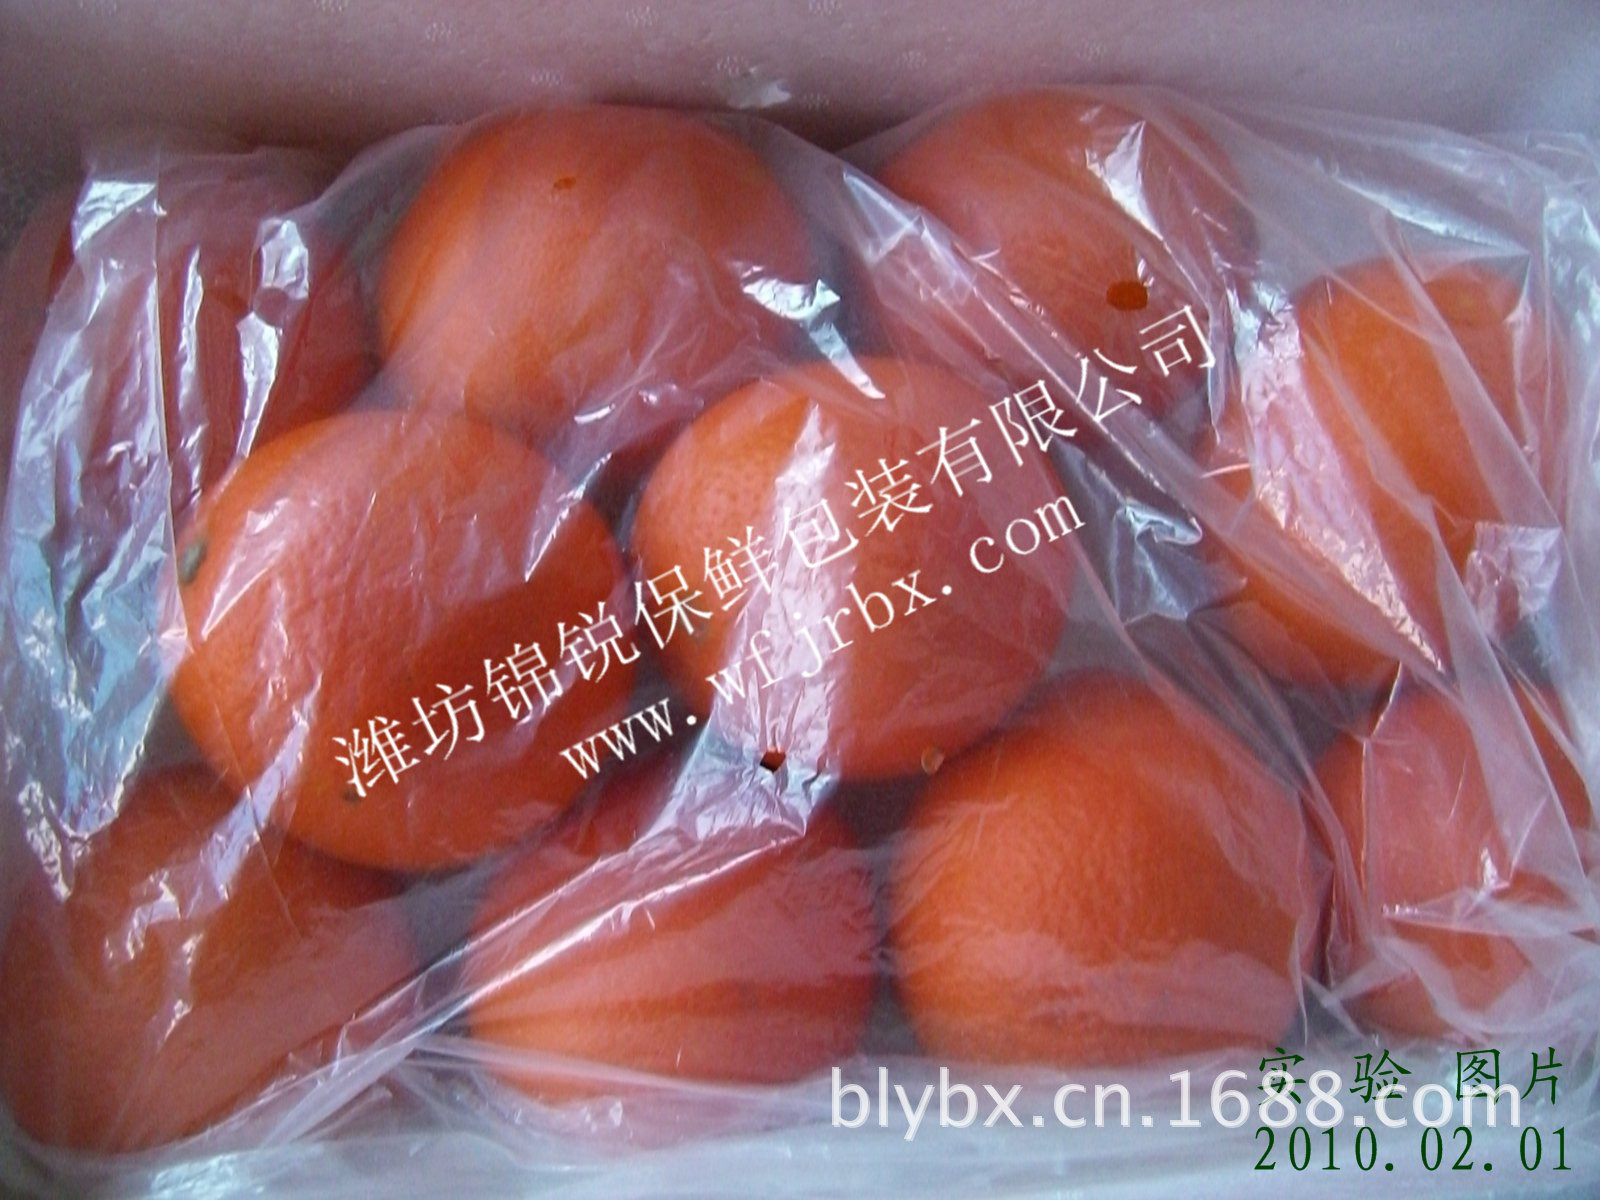 锦锐-桃子活性气调保鲜袋1图片,锦锐-桃子活性